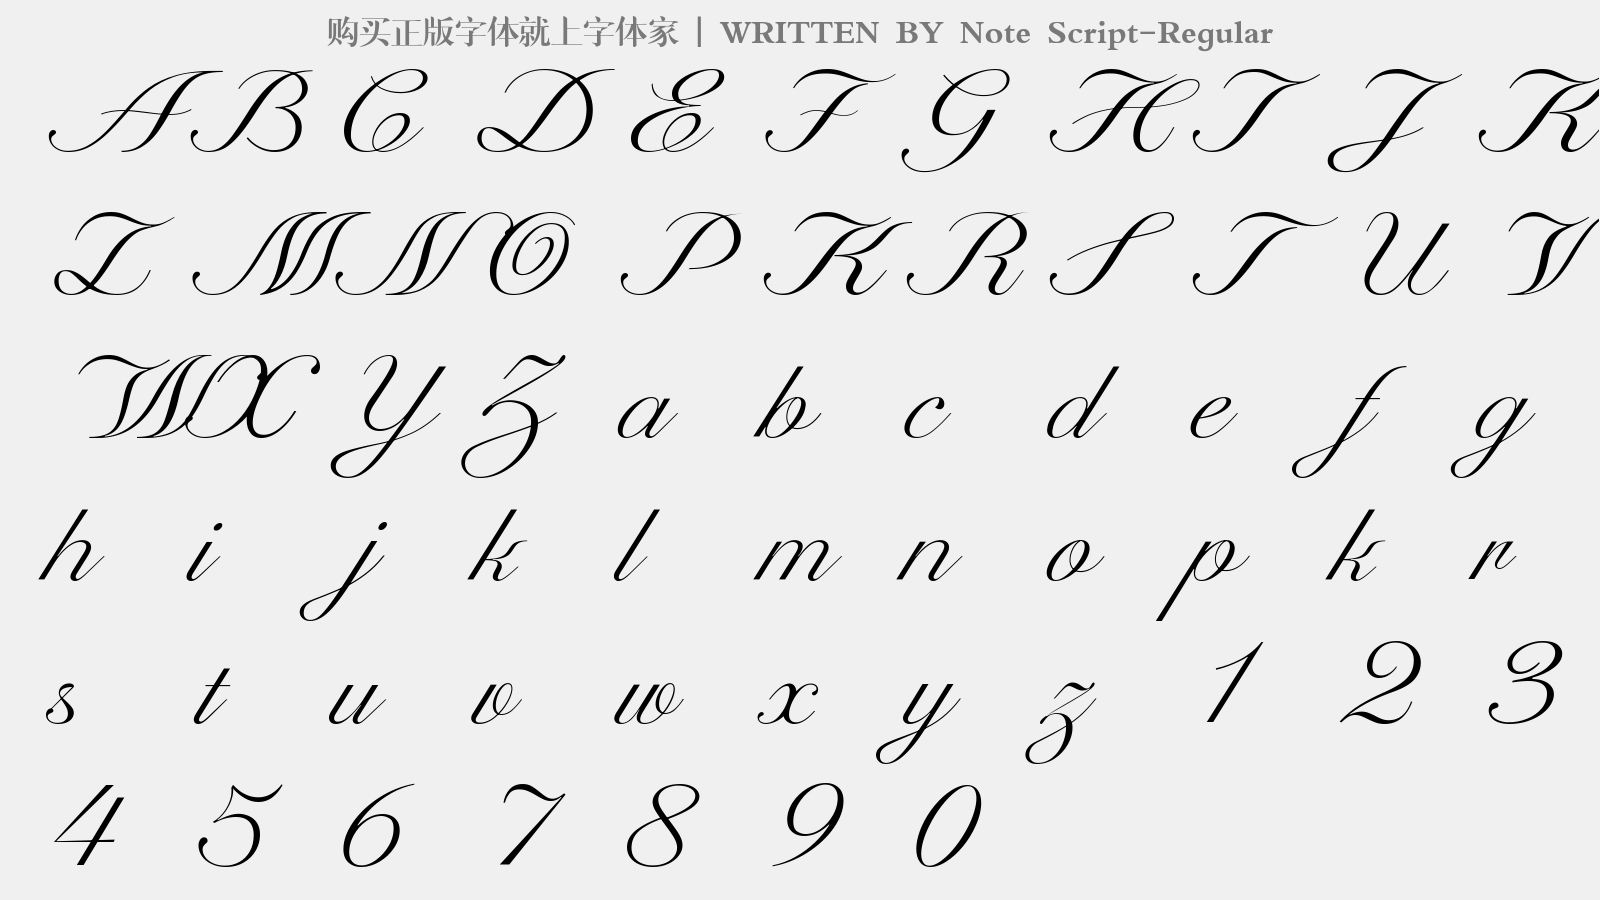 Note Script-Regular - 大写字母/小写字母/数字